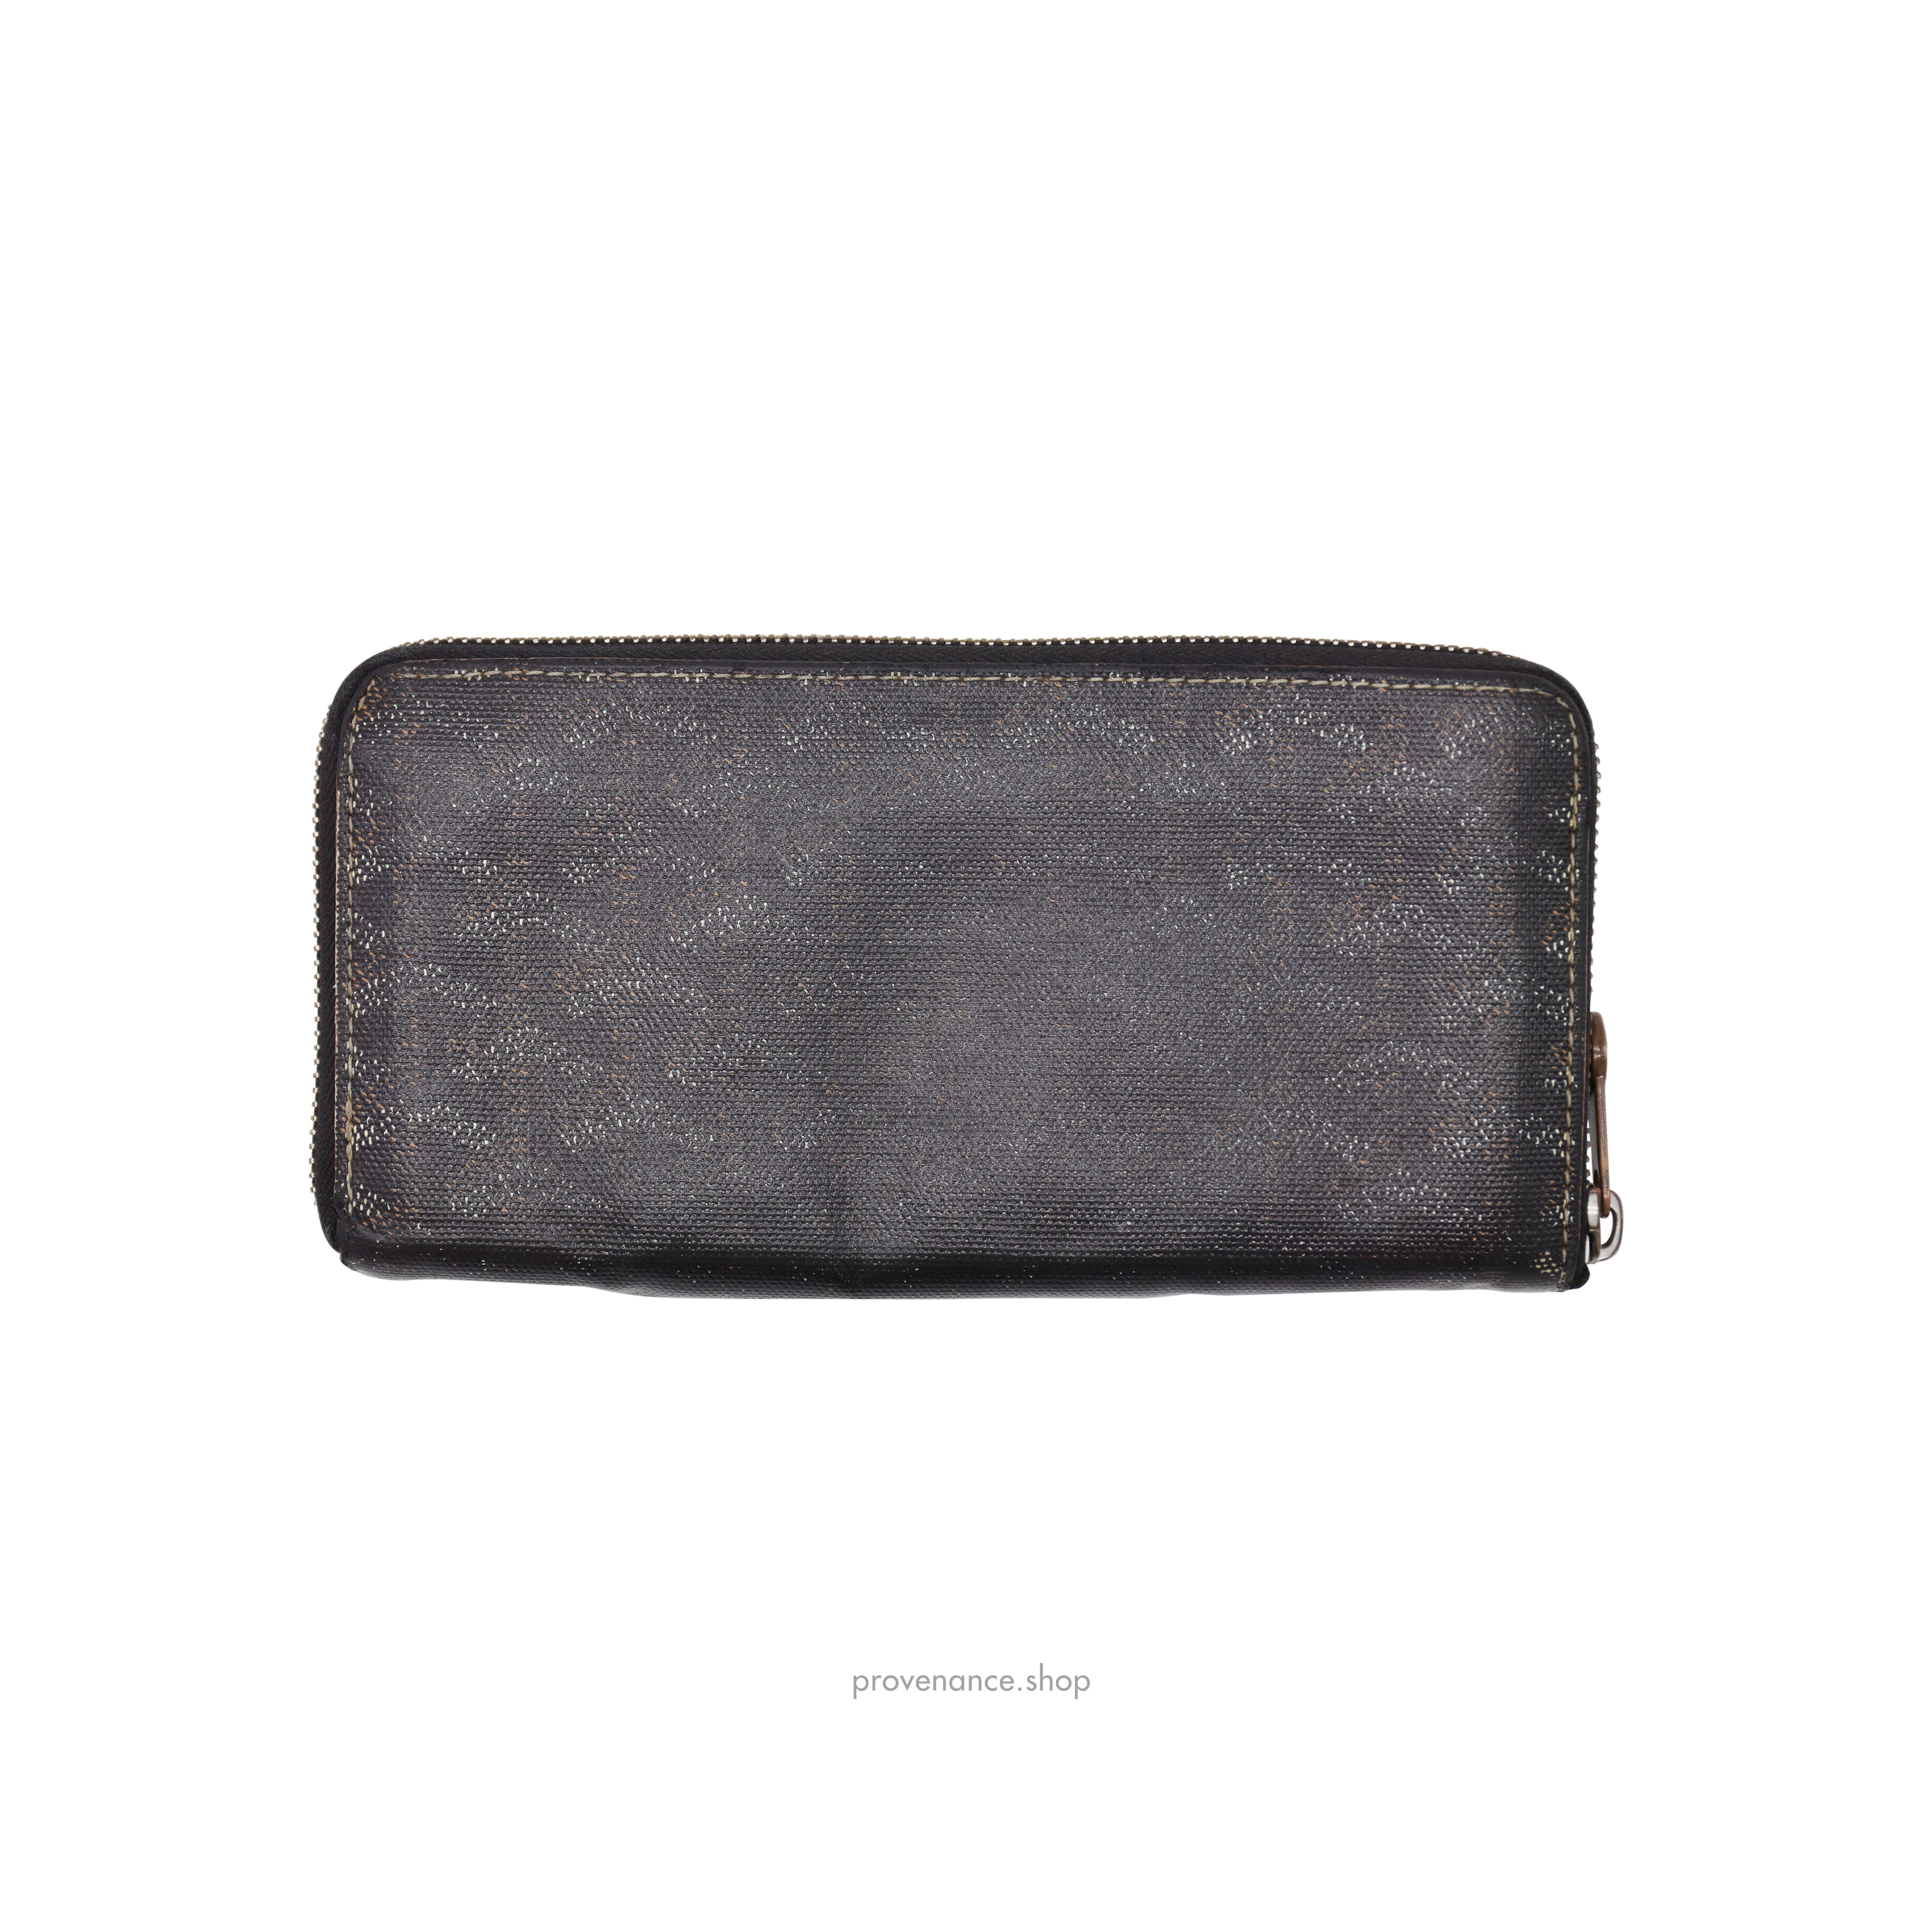 Goyard Matignon Long Wallet - Black/Tan - 2